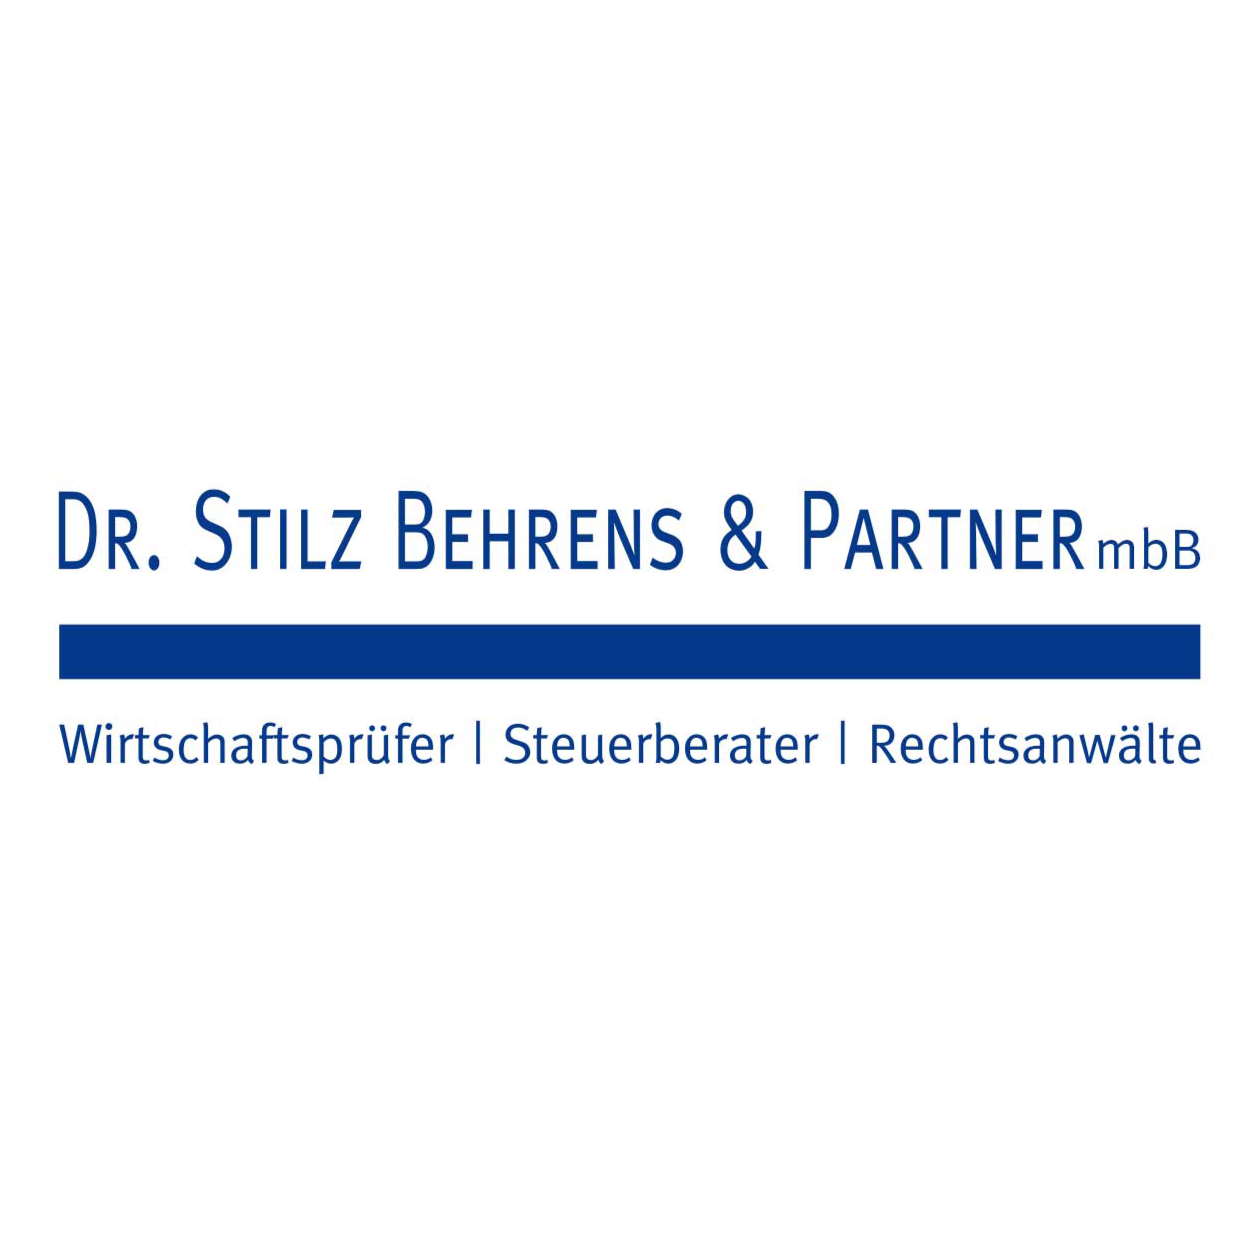 Dr. Stilz Behrens & Partner mbB  